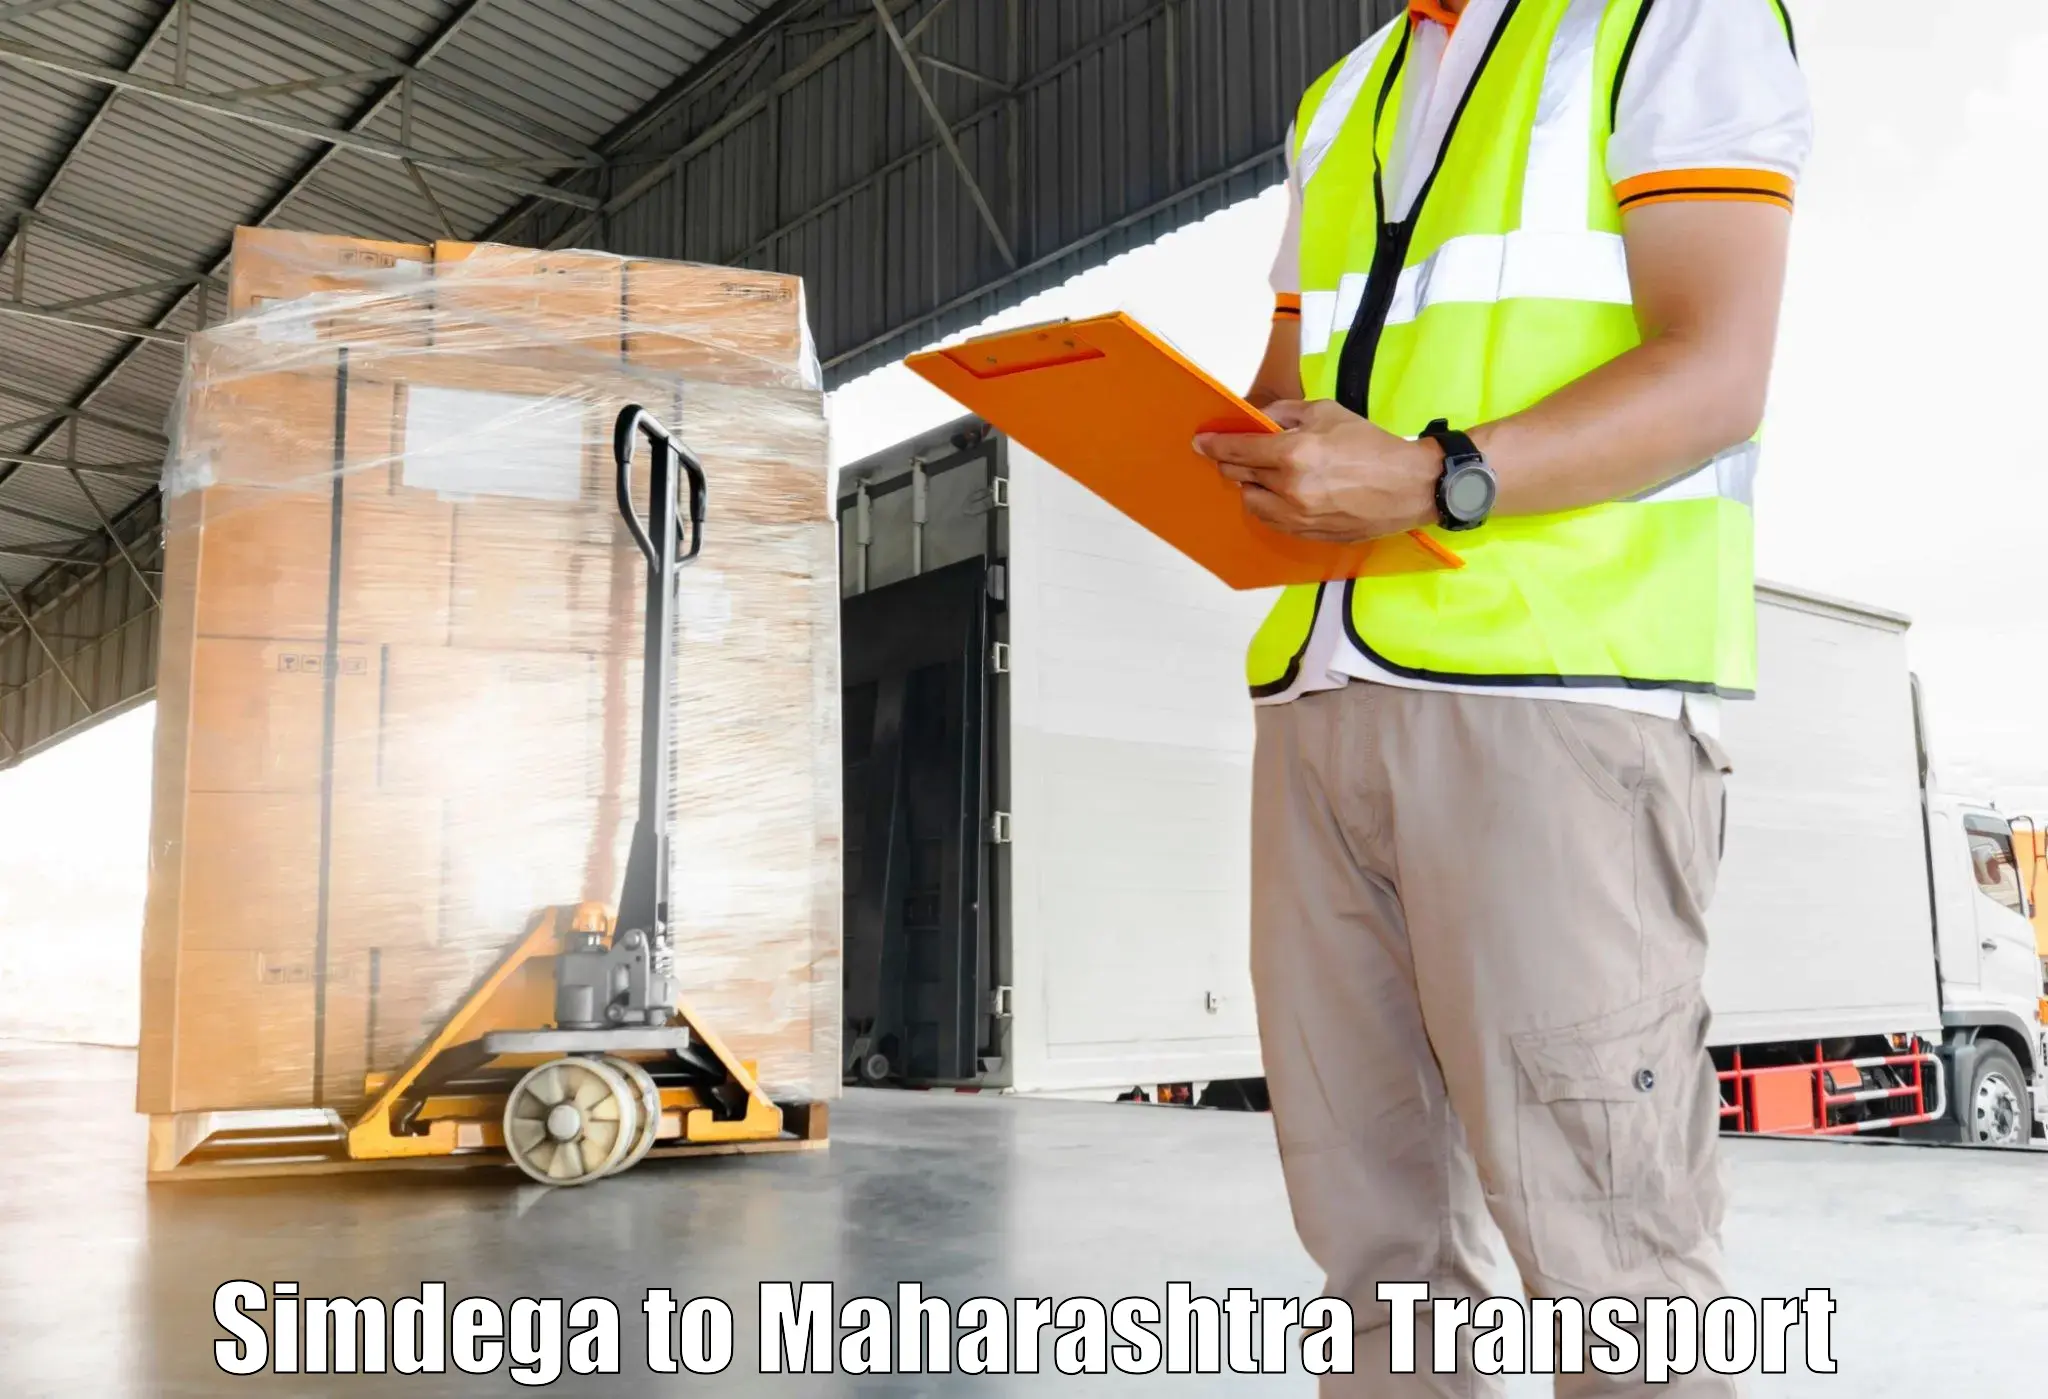 Transport services Simdega to Mahabaleshwar